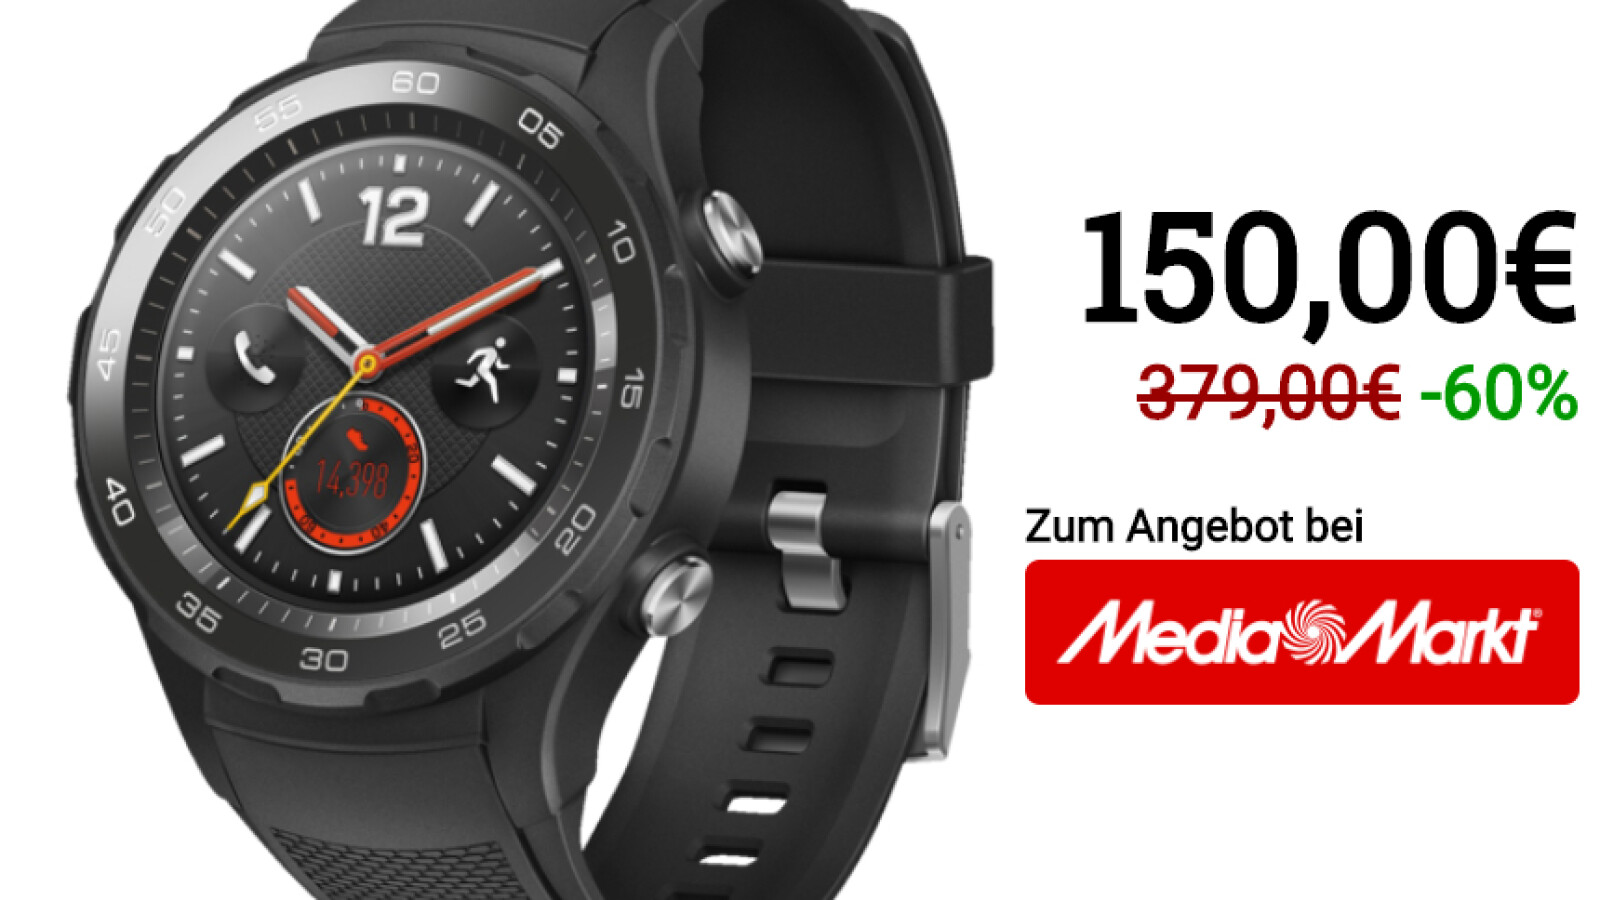 wonder Herziening Memo Huawei Watch 2: mega bargains in late-night shopping at Media Markt - World  Today News